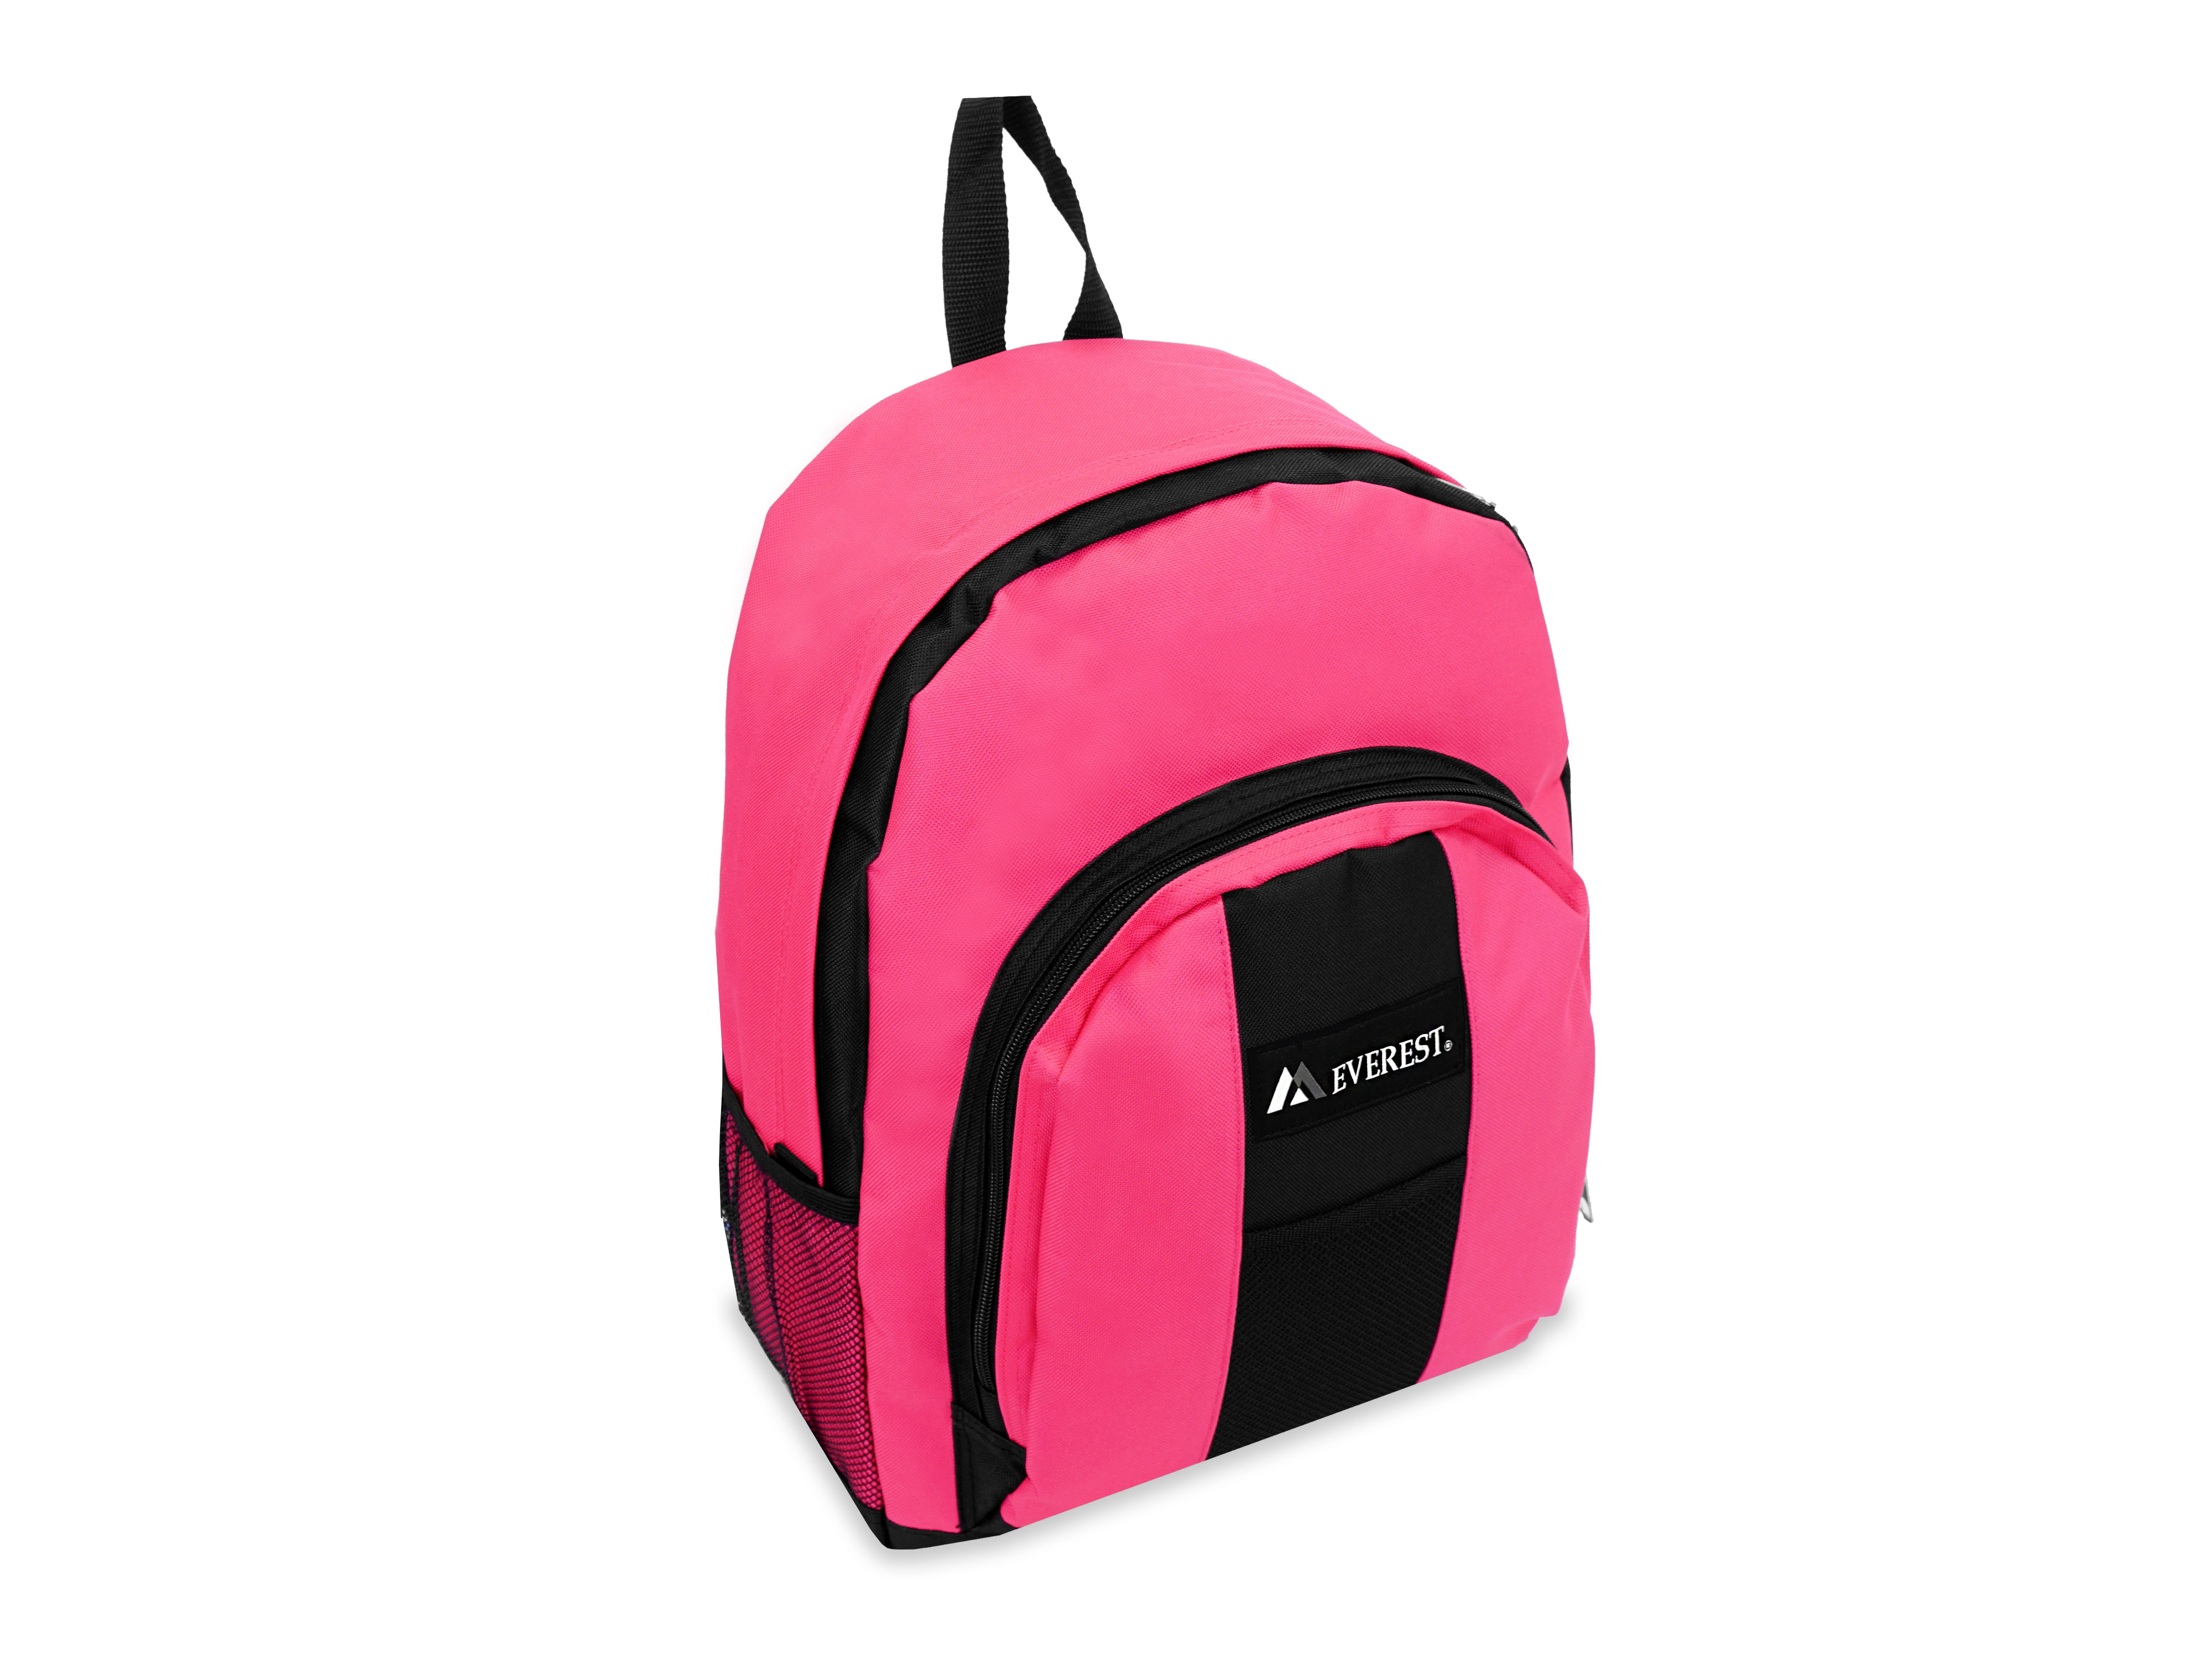 Everest 17" Backpack with Front & Side Pockets, HOT PINK/BLACK All Ages, Unisex - BP2072-HPK/BK - image 1 of 4